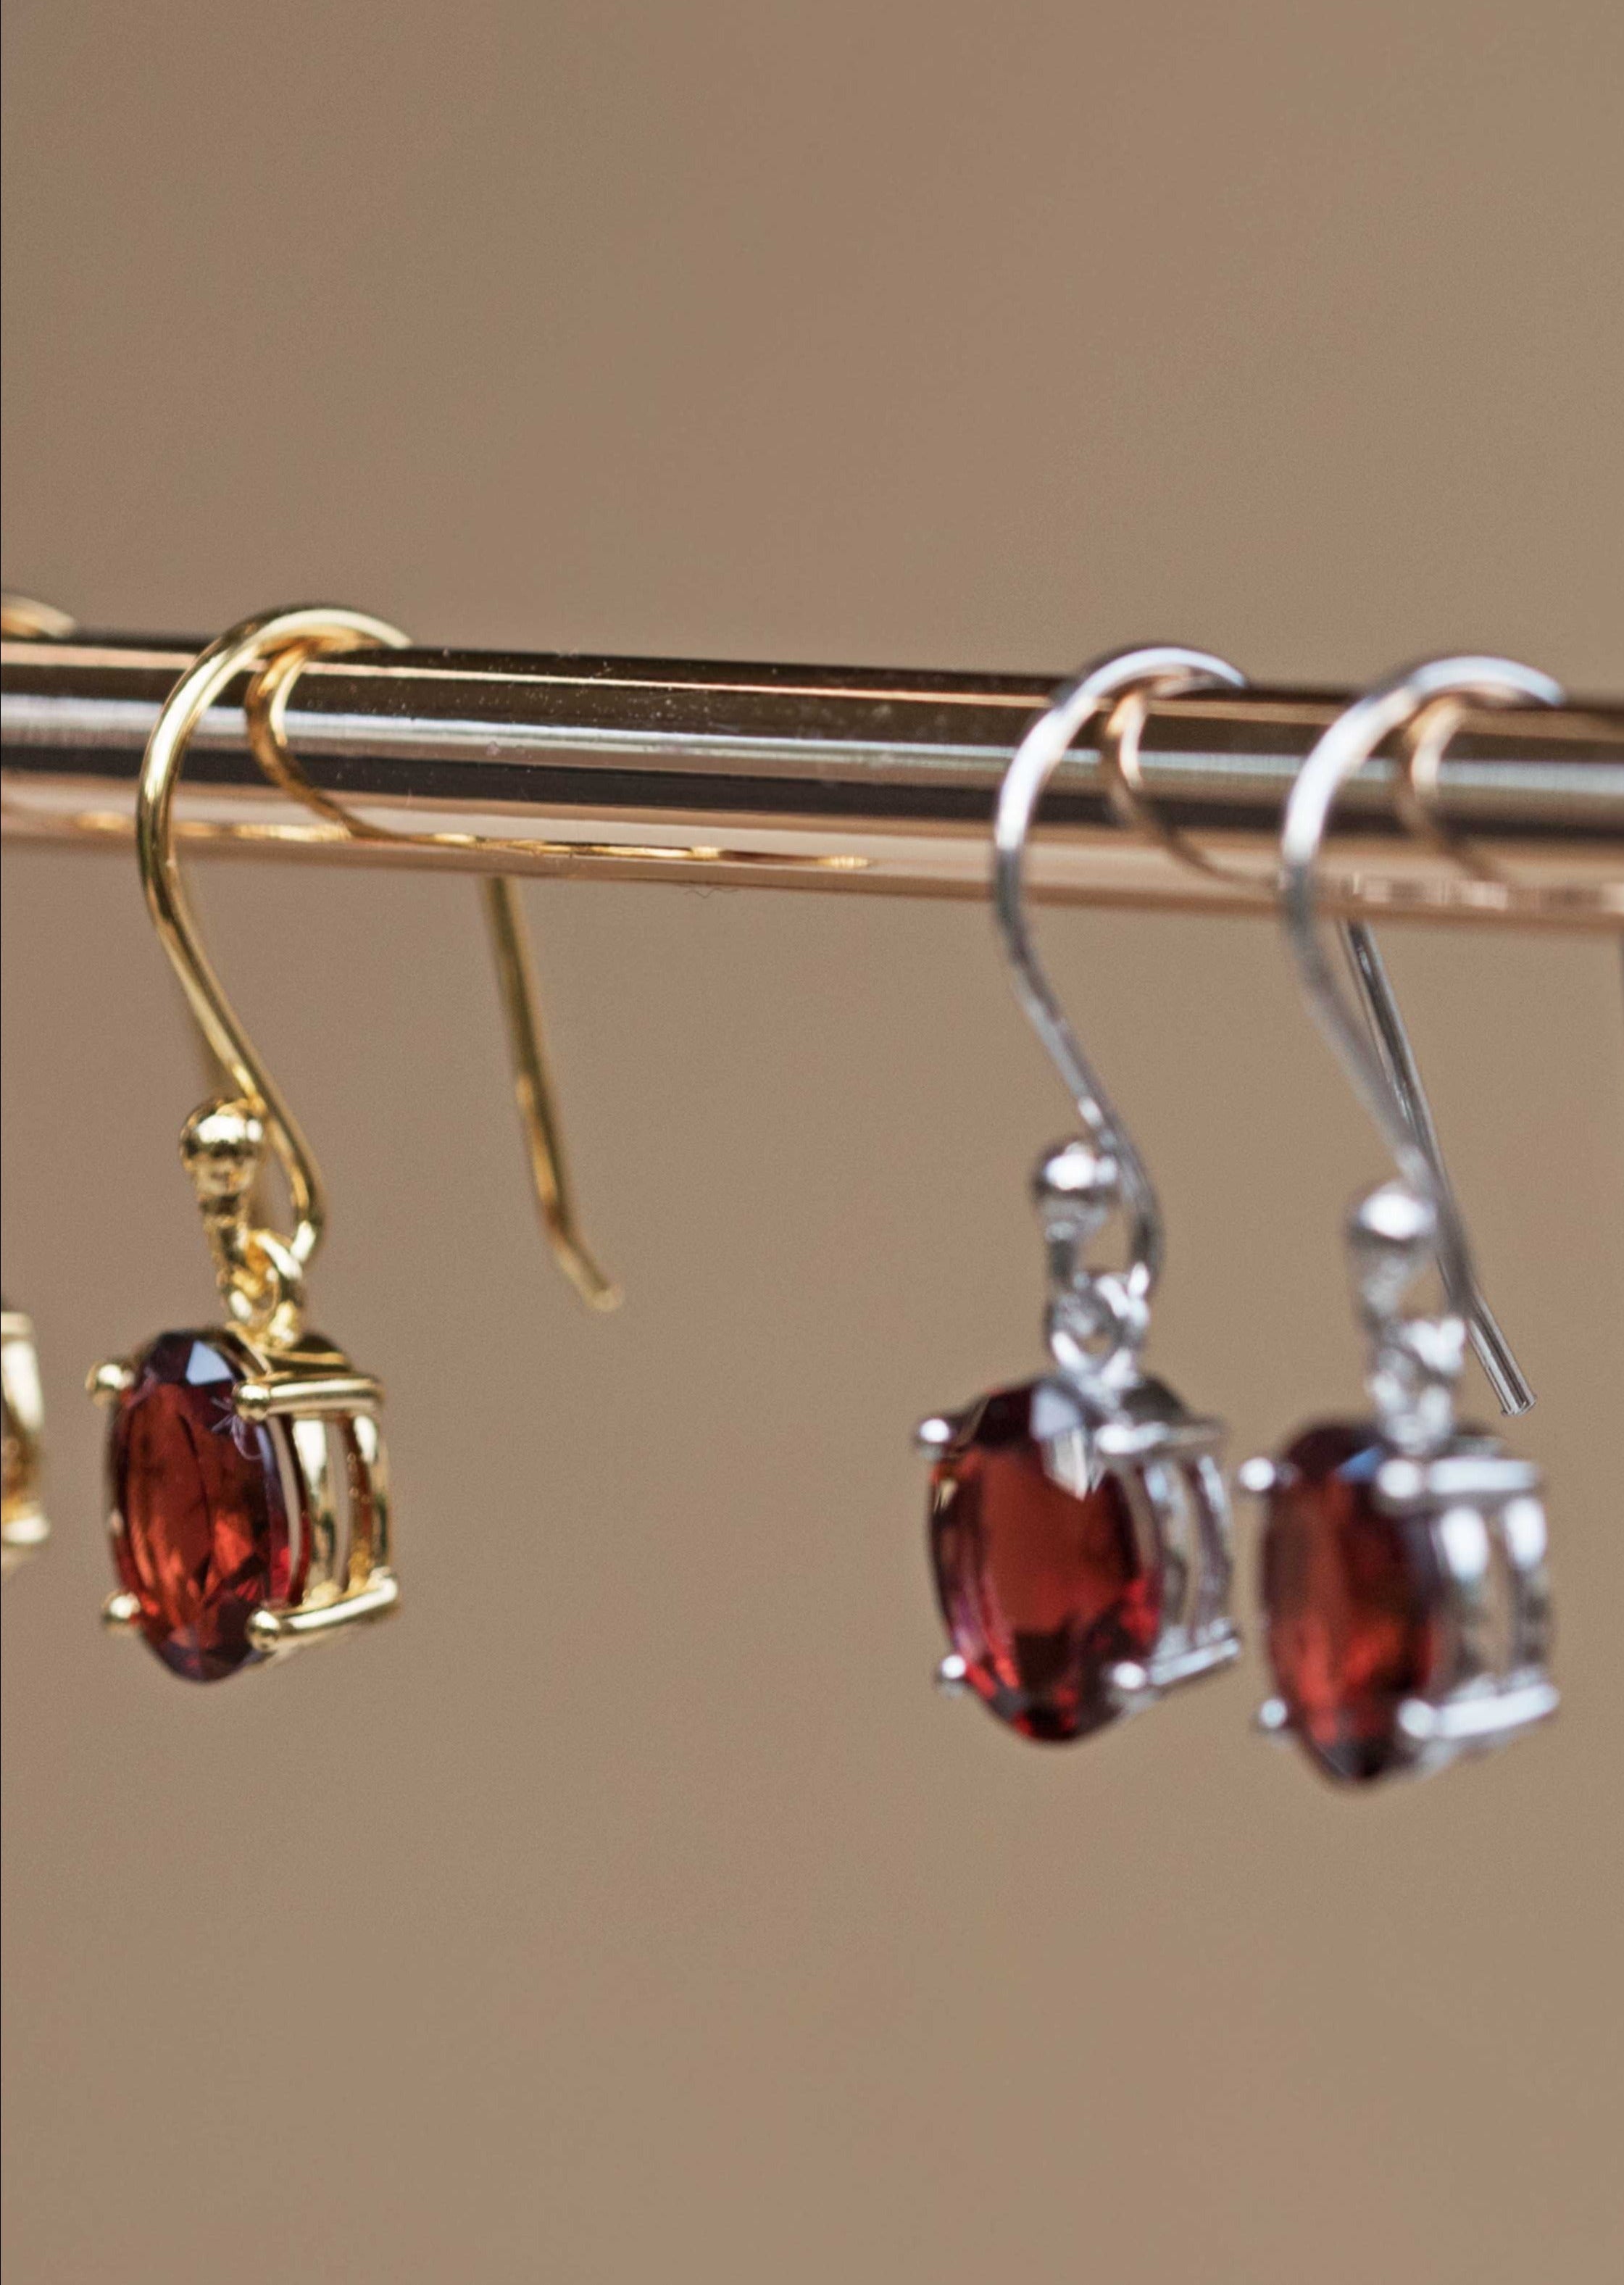 Garnet Gold Dangle Drop Earrings January Birthstone Gifts for Women Girls her girlfriend mom best friend